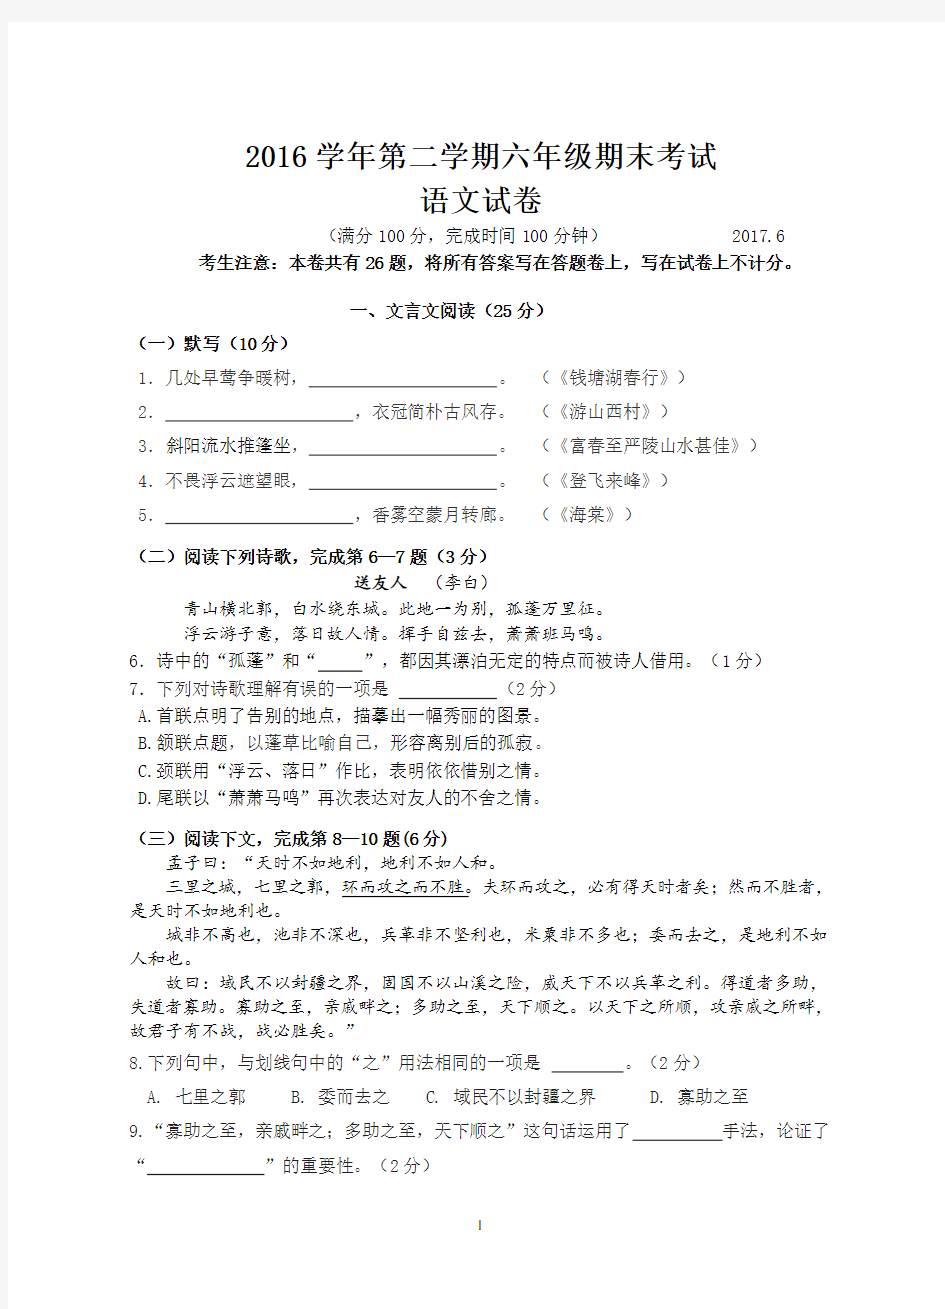 (完整版)上海市2016学年第二学期期末考试六年级语文试卷(含答题纸和答案)